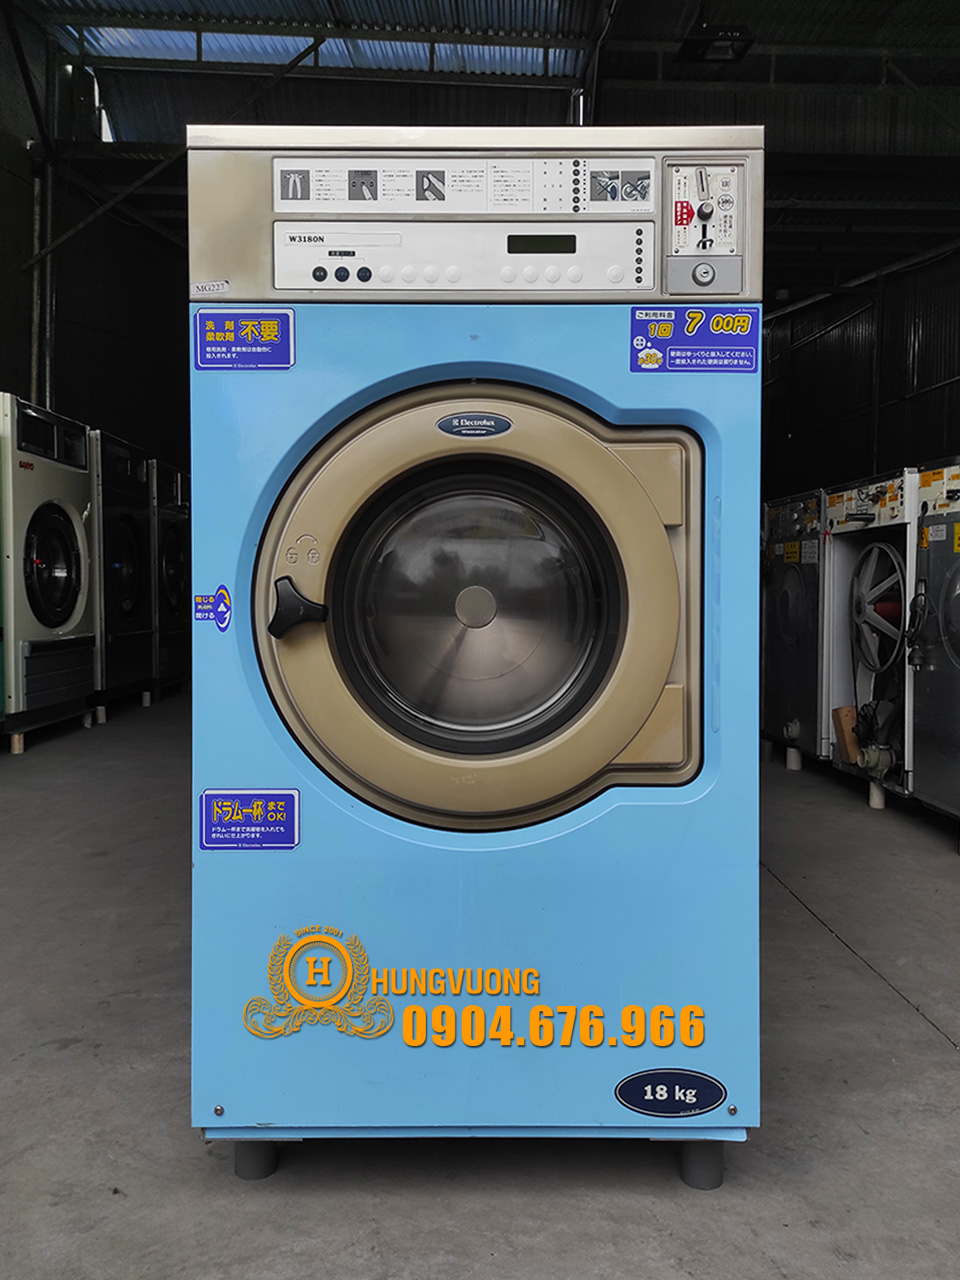 Mặt trước máy giặt công nghiệp ELECTROLUX W3180N, 18kg, chân cố định, Thụy Điển